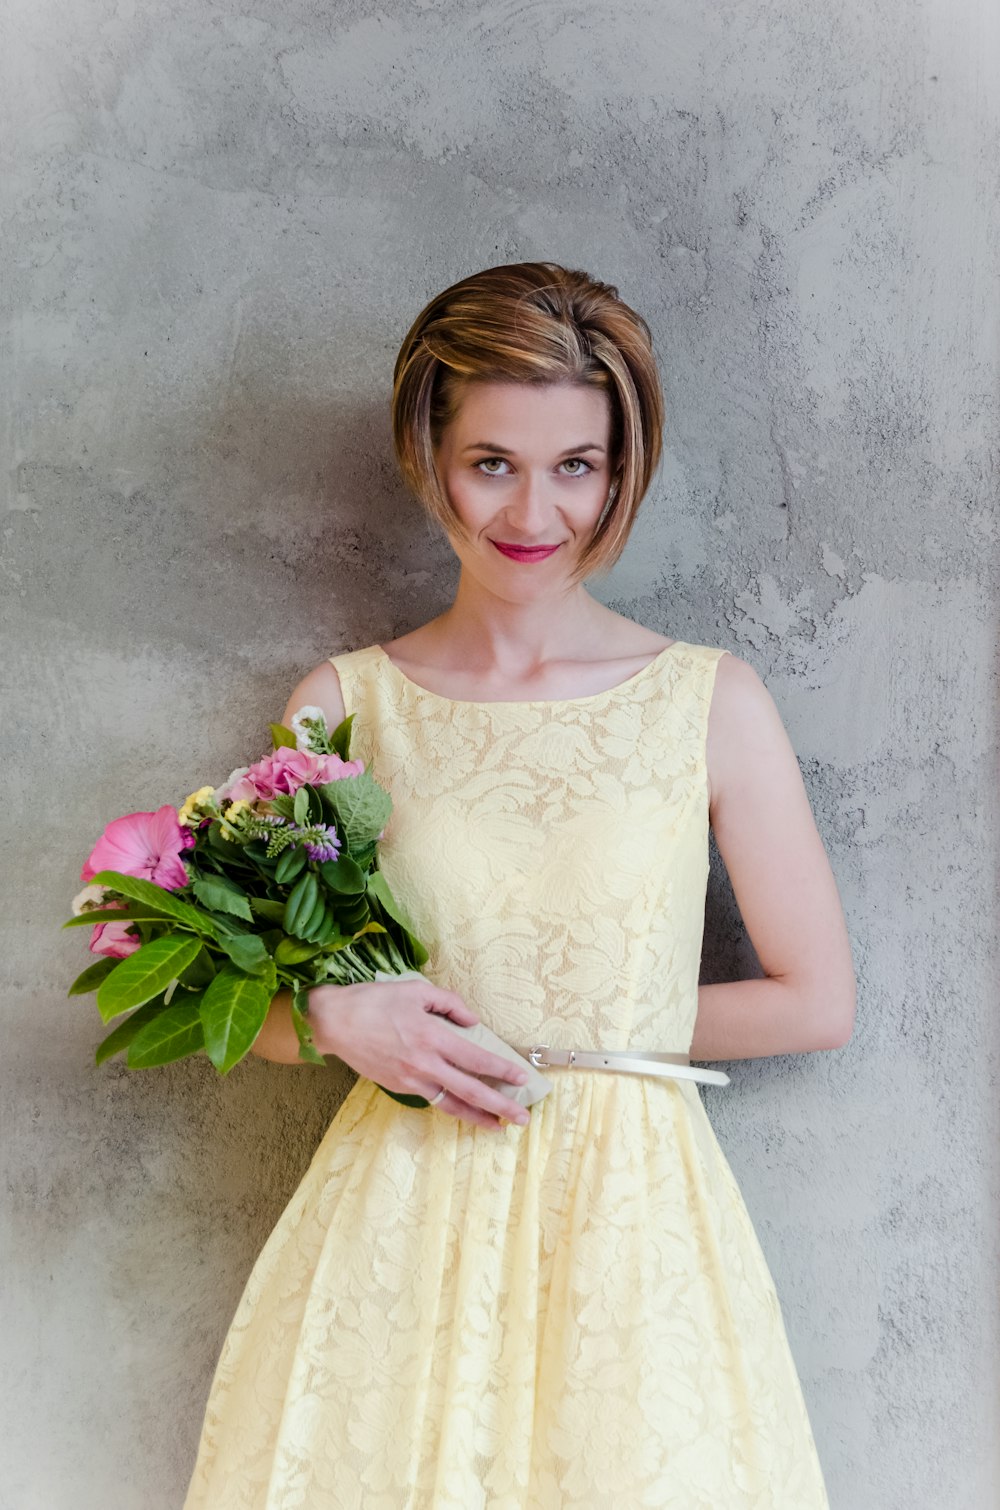 Frau im gelben Blumenkleid trägt rosa Blumenstrauß